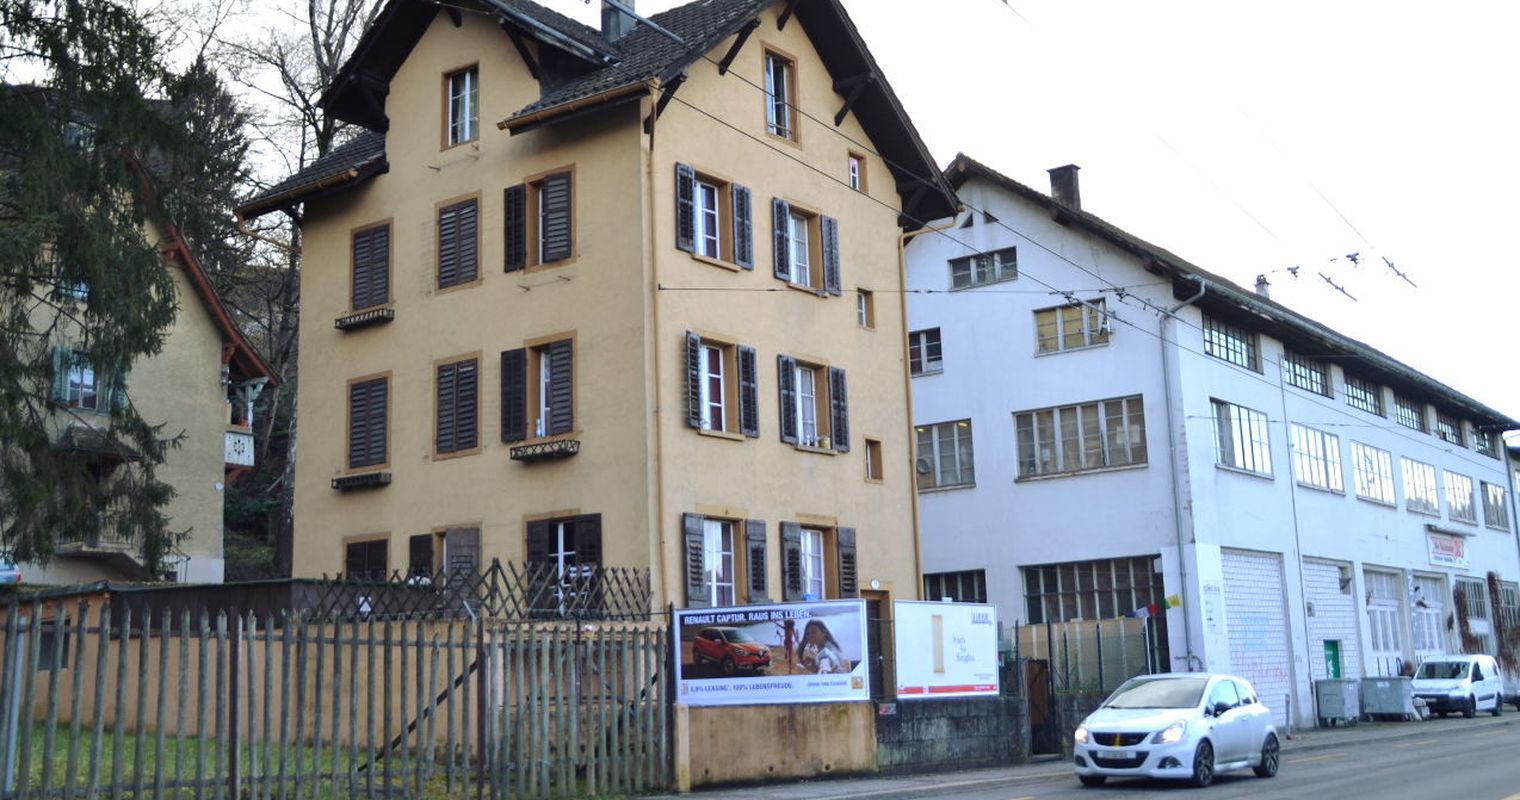 Fälle von Menschenhandel in Luzern